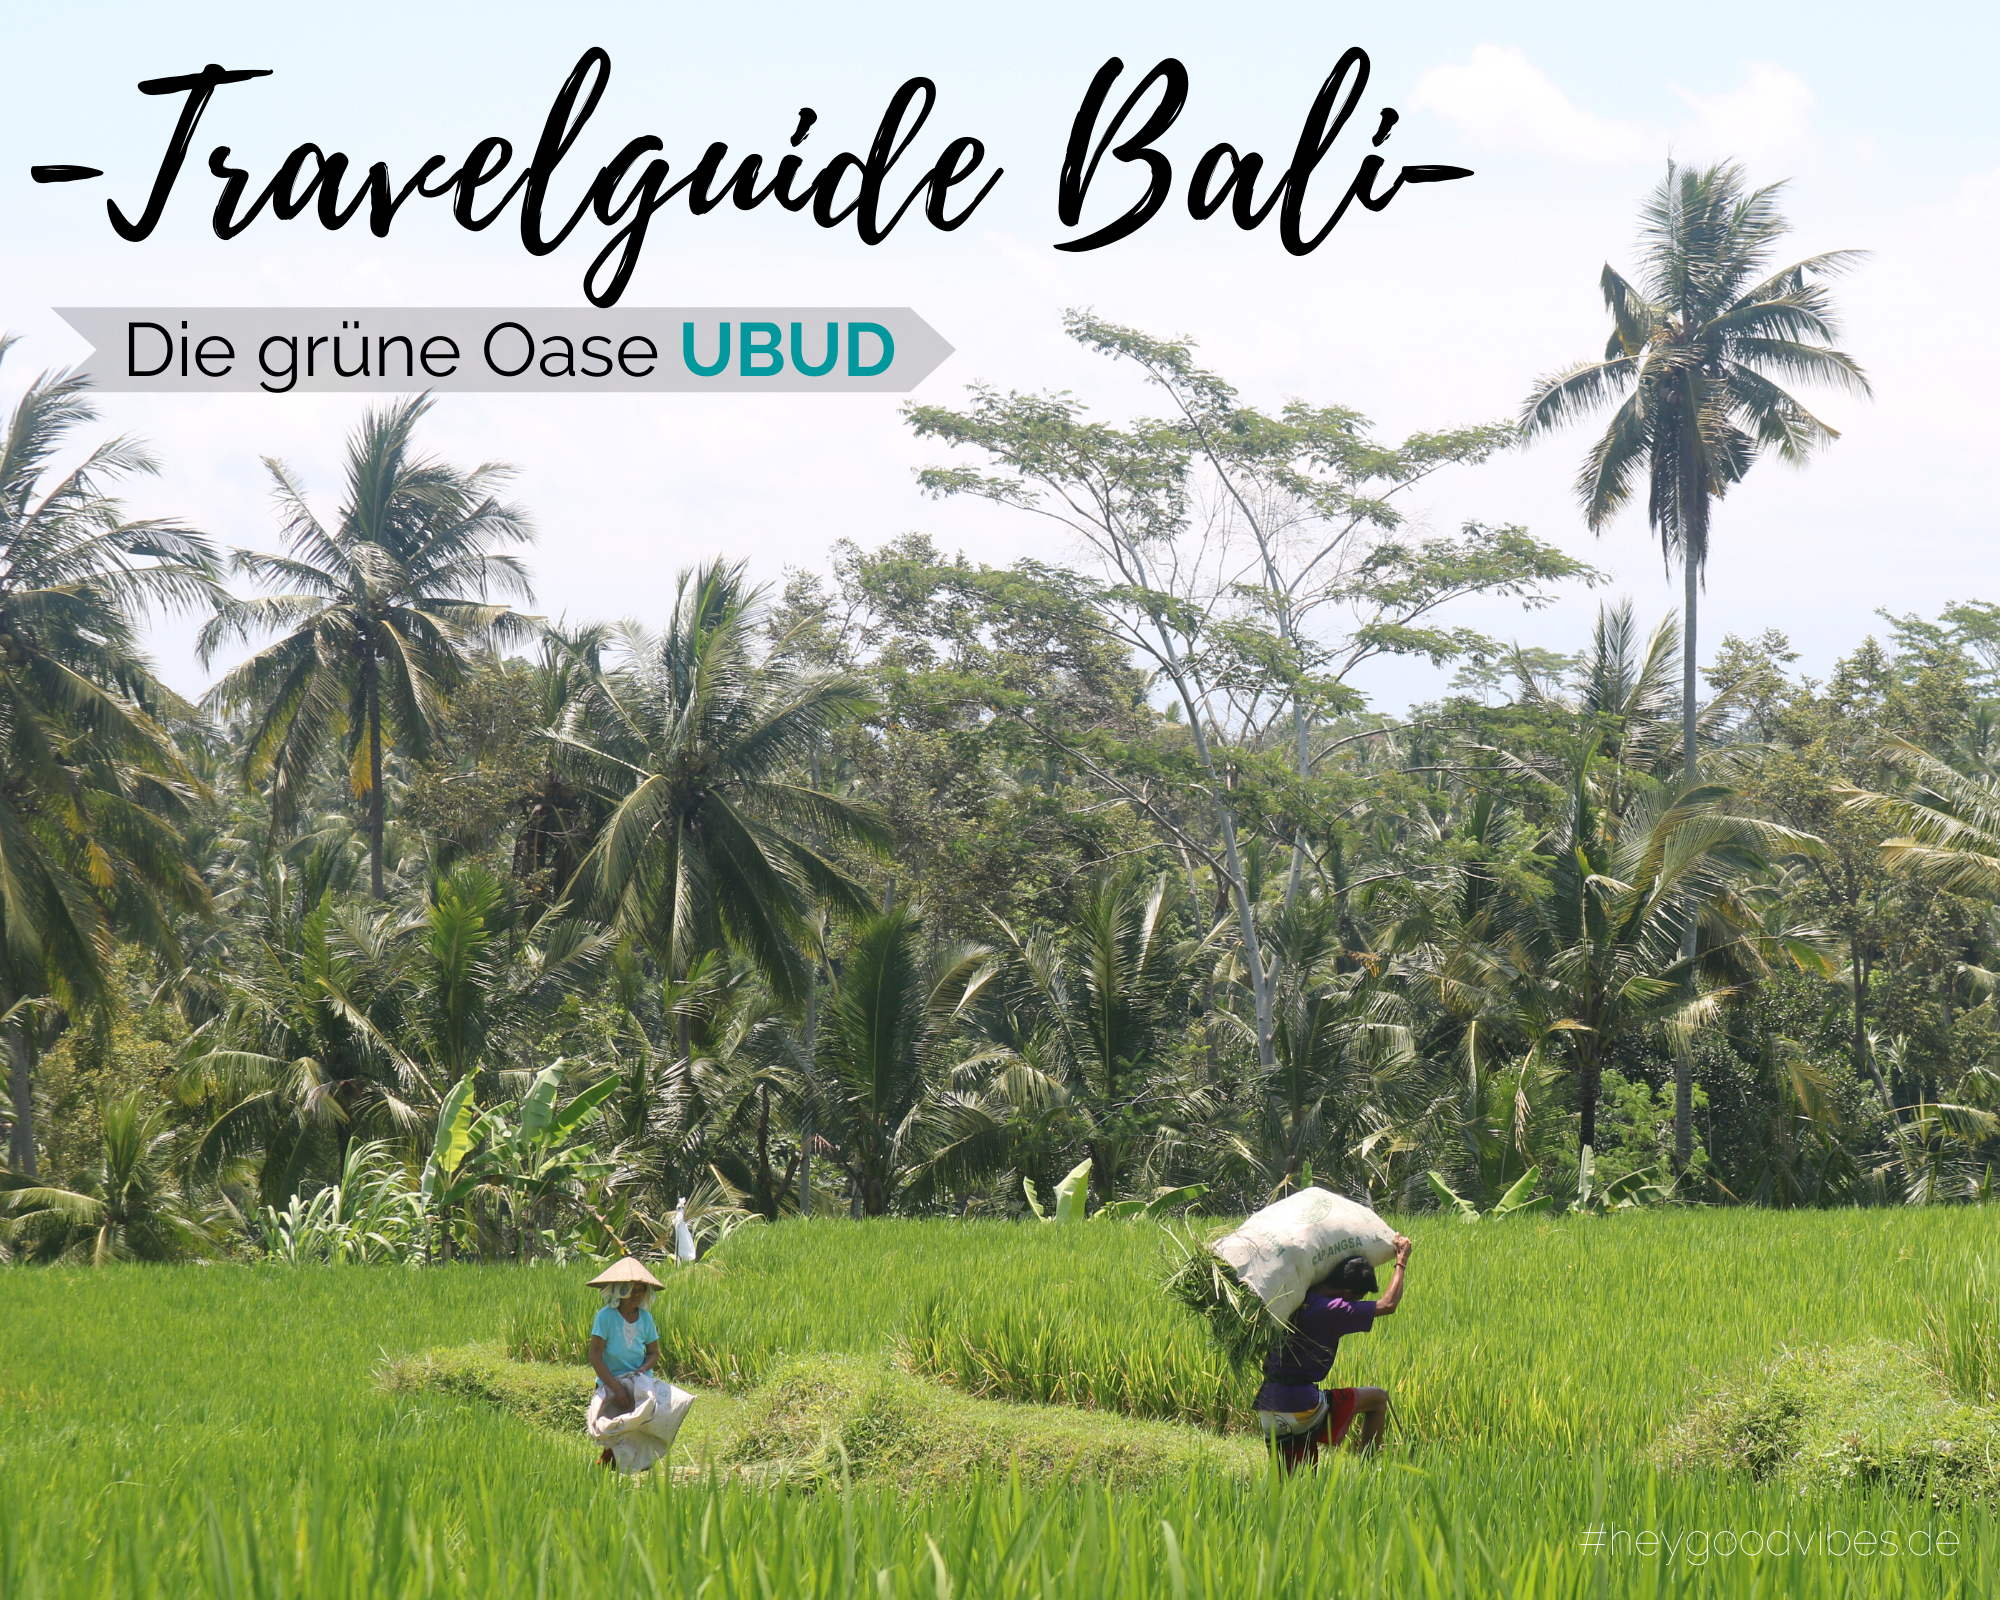 Travelguide Bali: Die grüne Oase UBUD